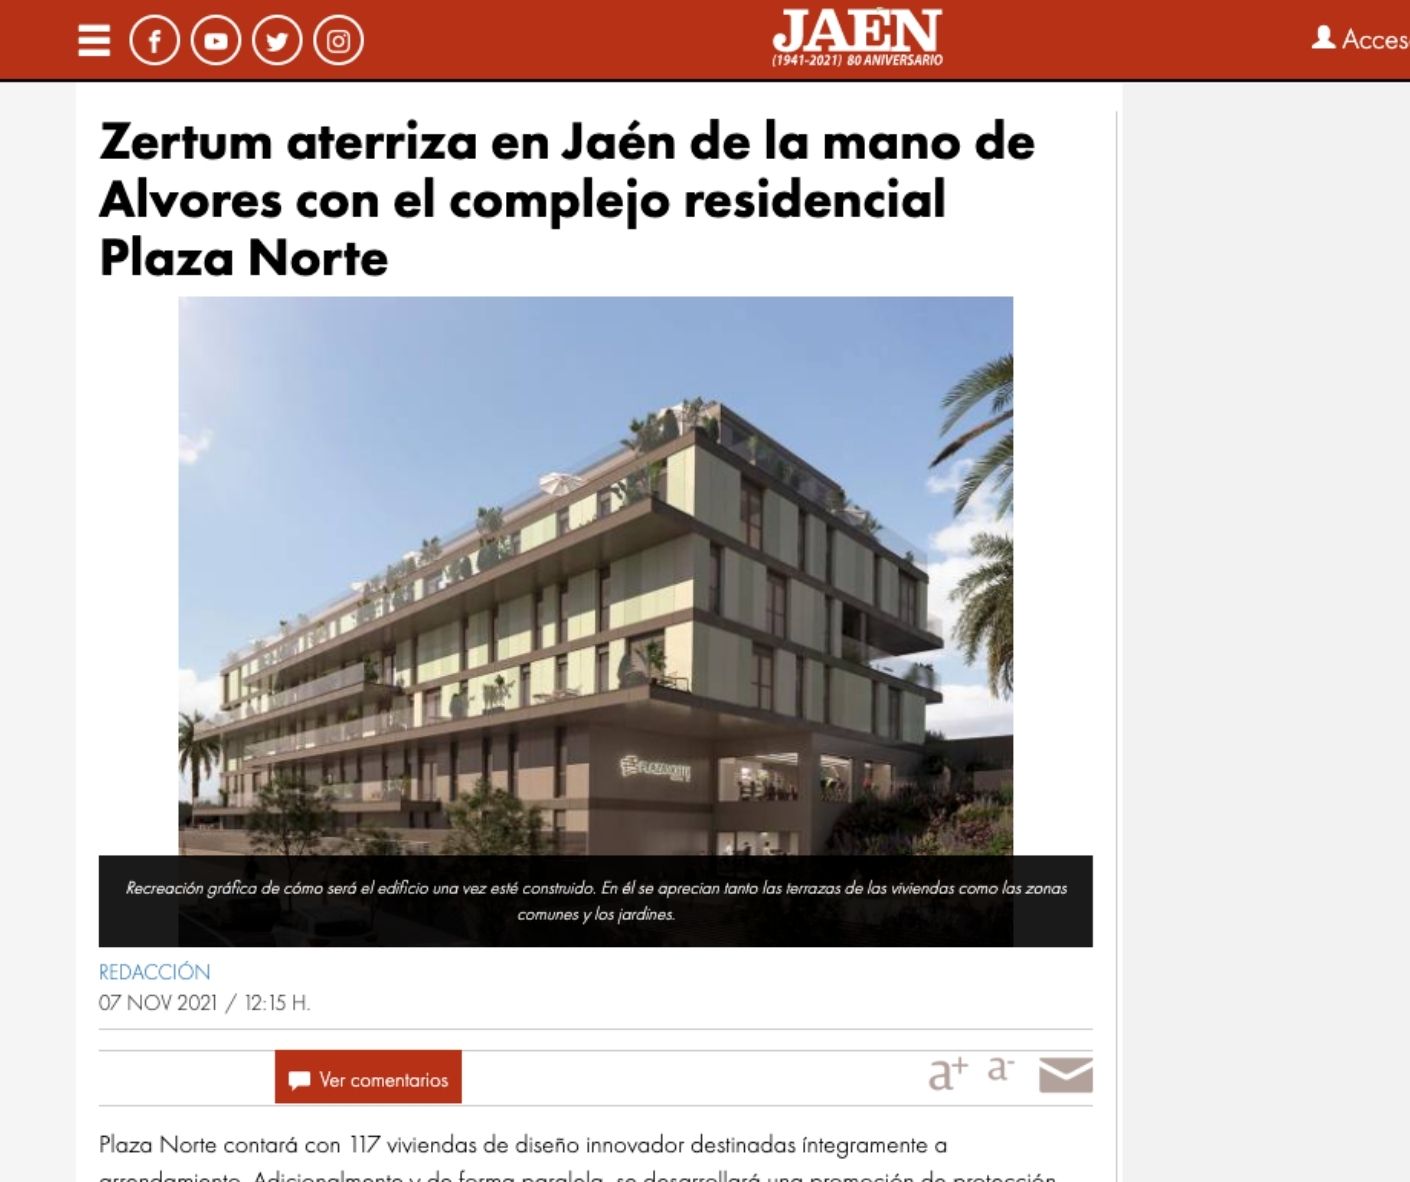 Zertum aterriza en Jaén de la mano de Alvores con el complejo residencial Plaza Norte